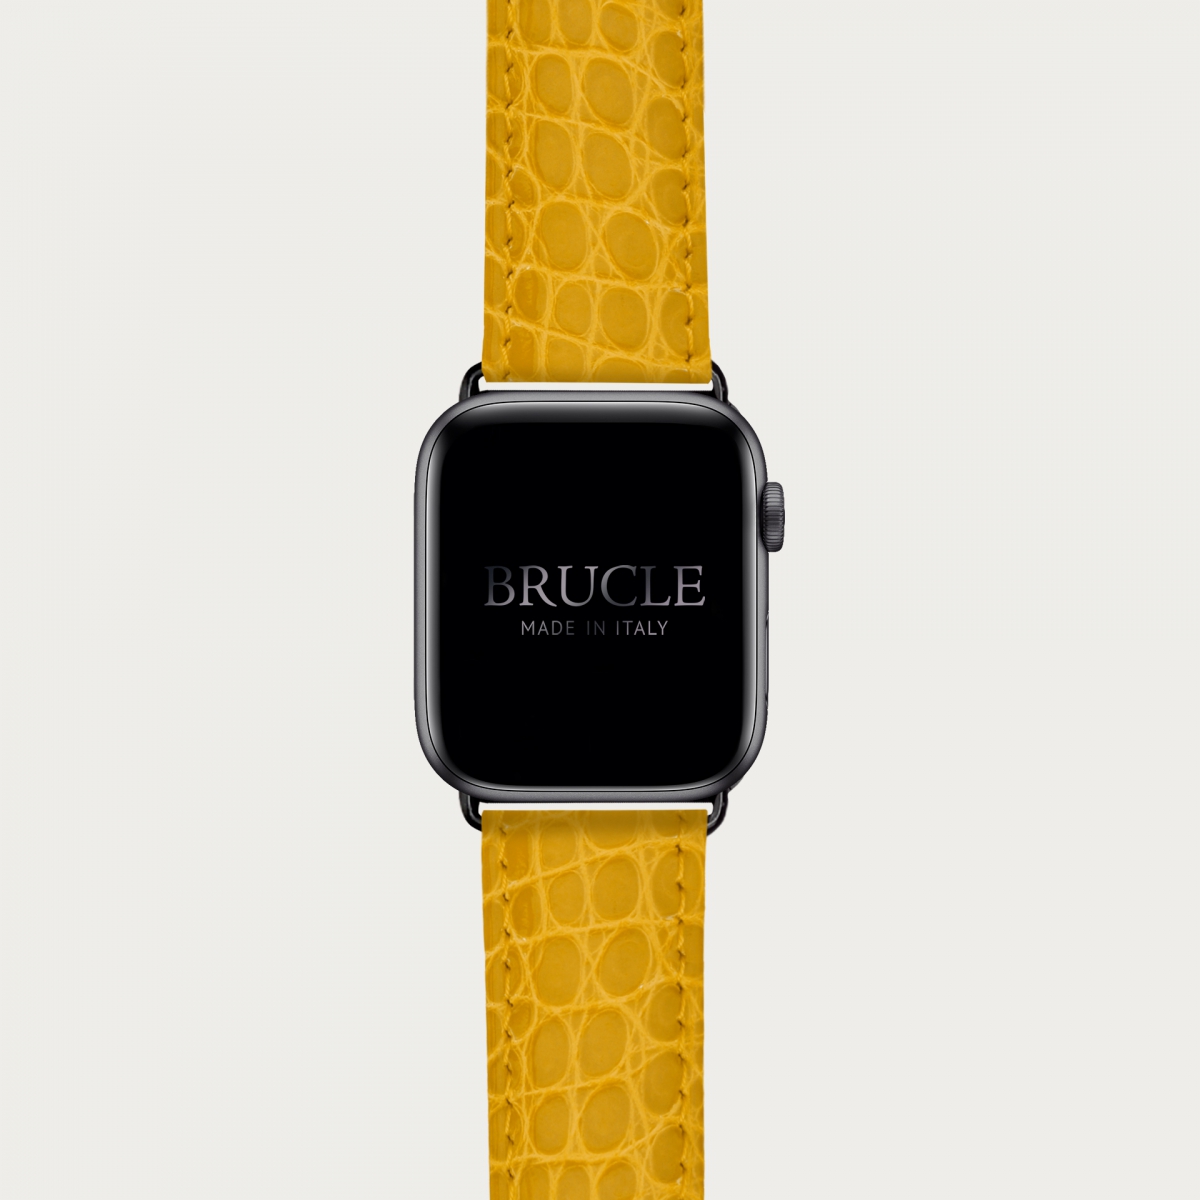 Brucle cinturino giallo in vera pelle alligatore per orologio, Compatibile con Apple Watch / Galaxy Samsung